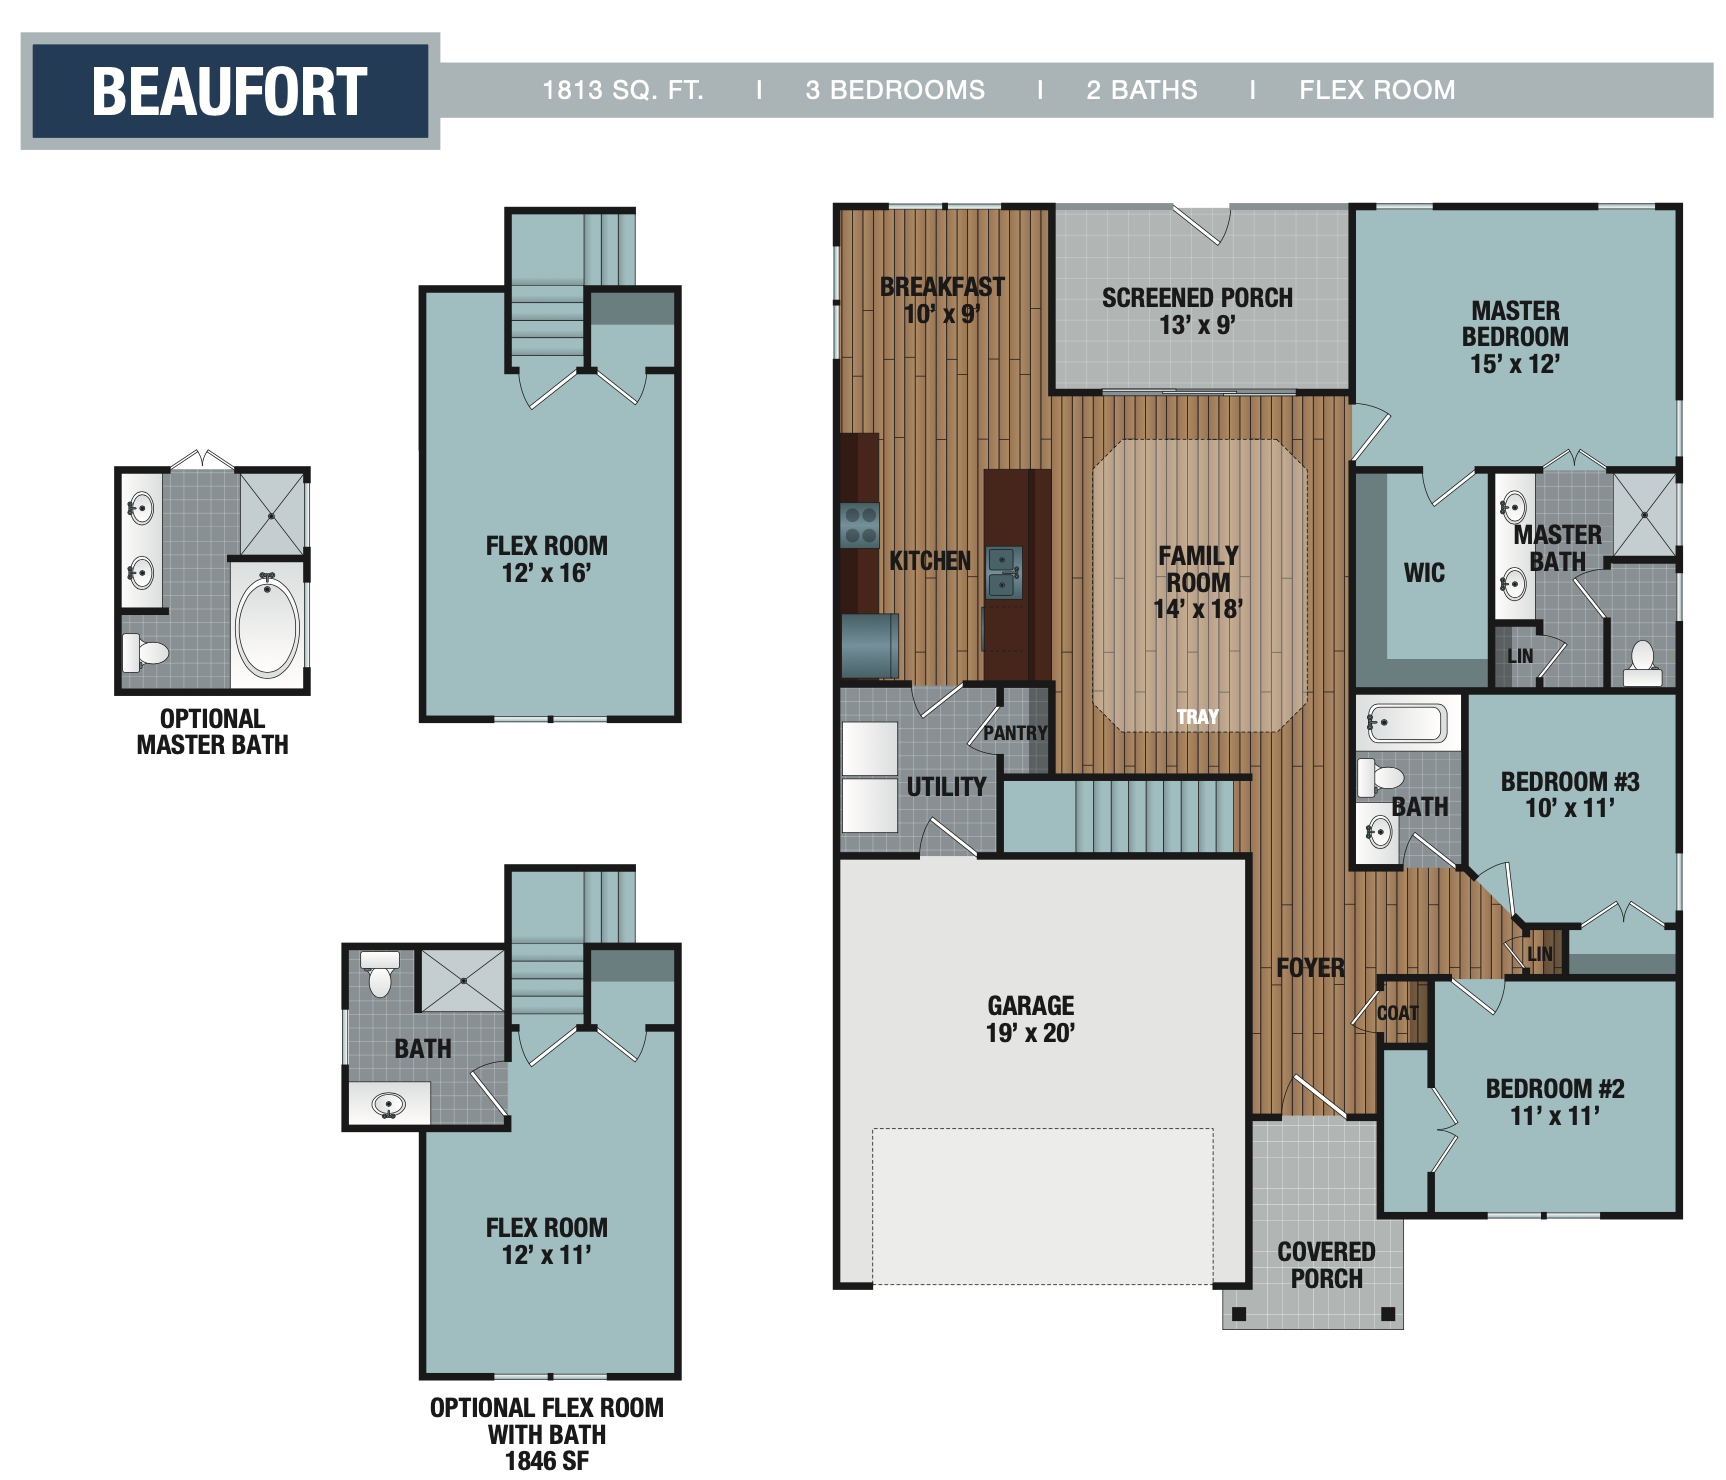 Beaufort floor plan image